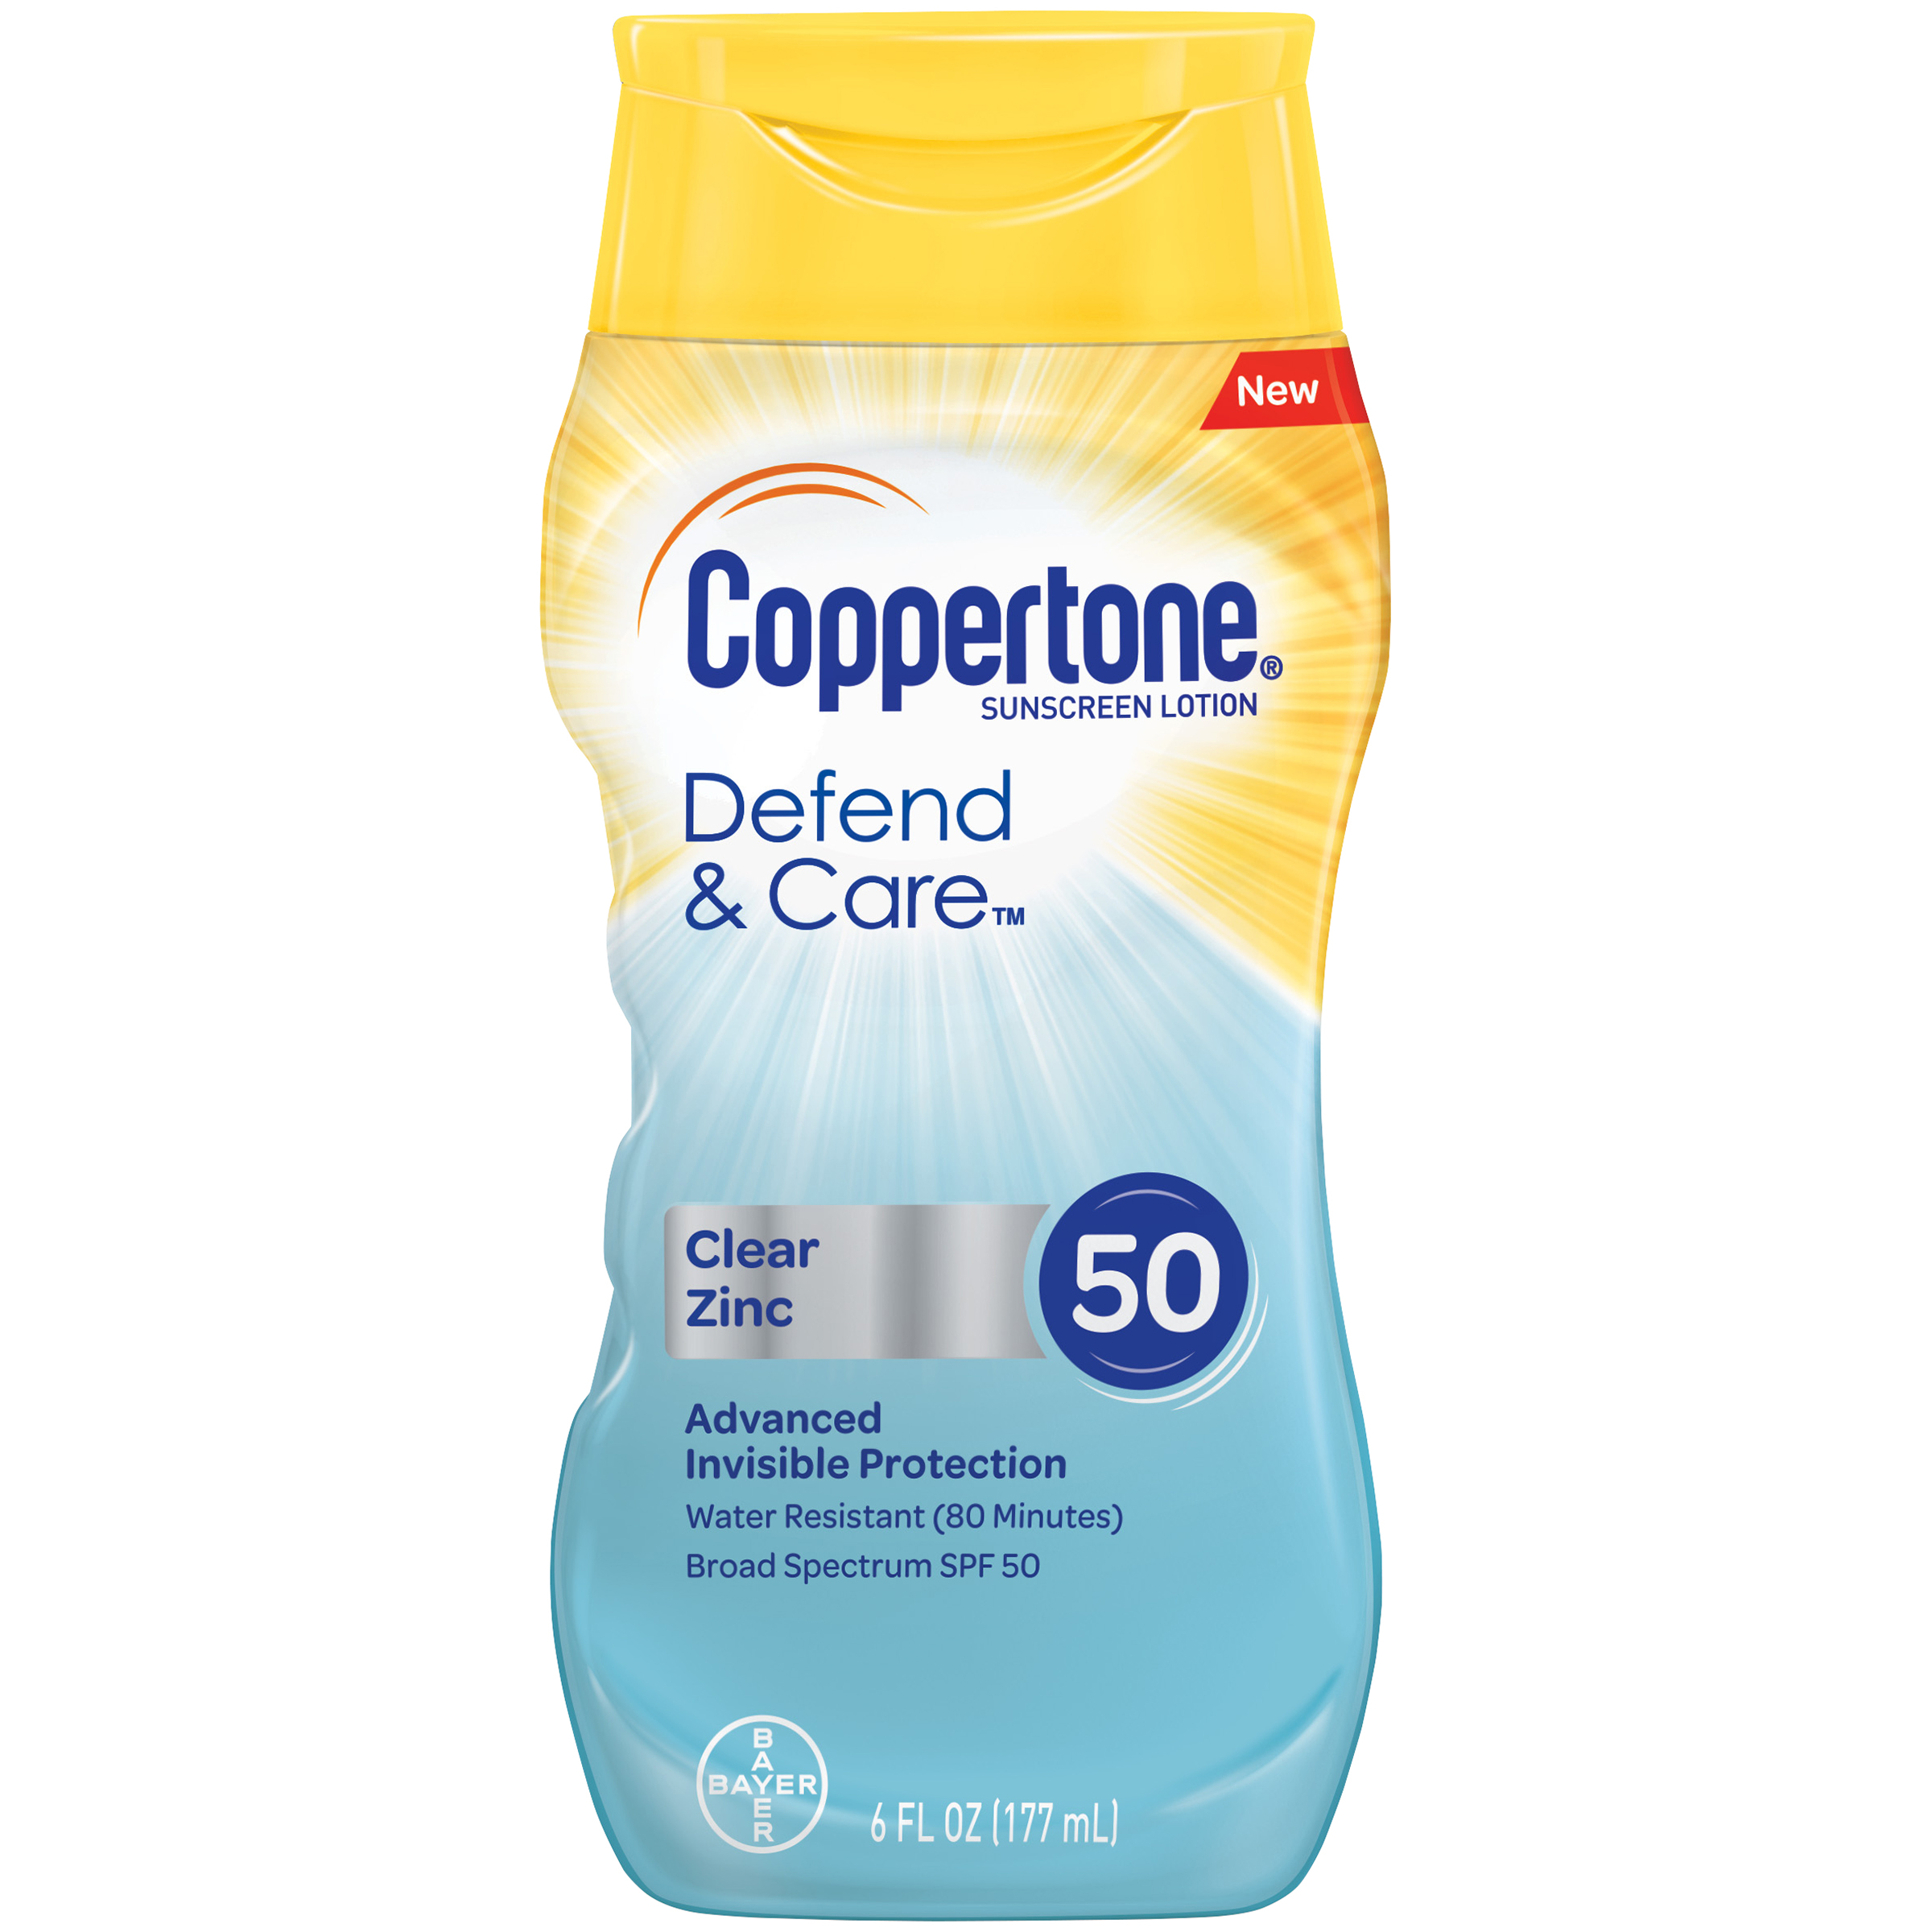 Coppertone Defend & Care Clear Zinc Sunscreen Broad Spectrum SPF 50 Lotion, 6 Fluid Ounces